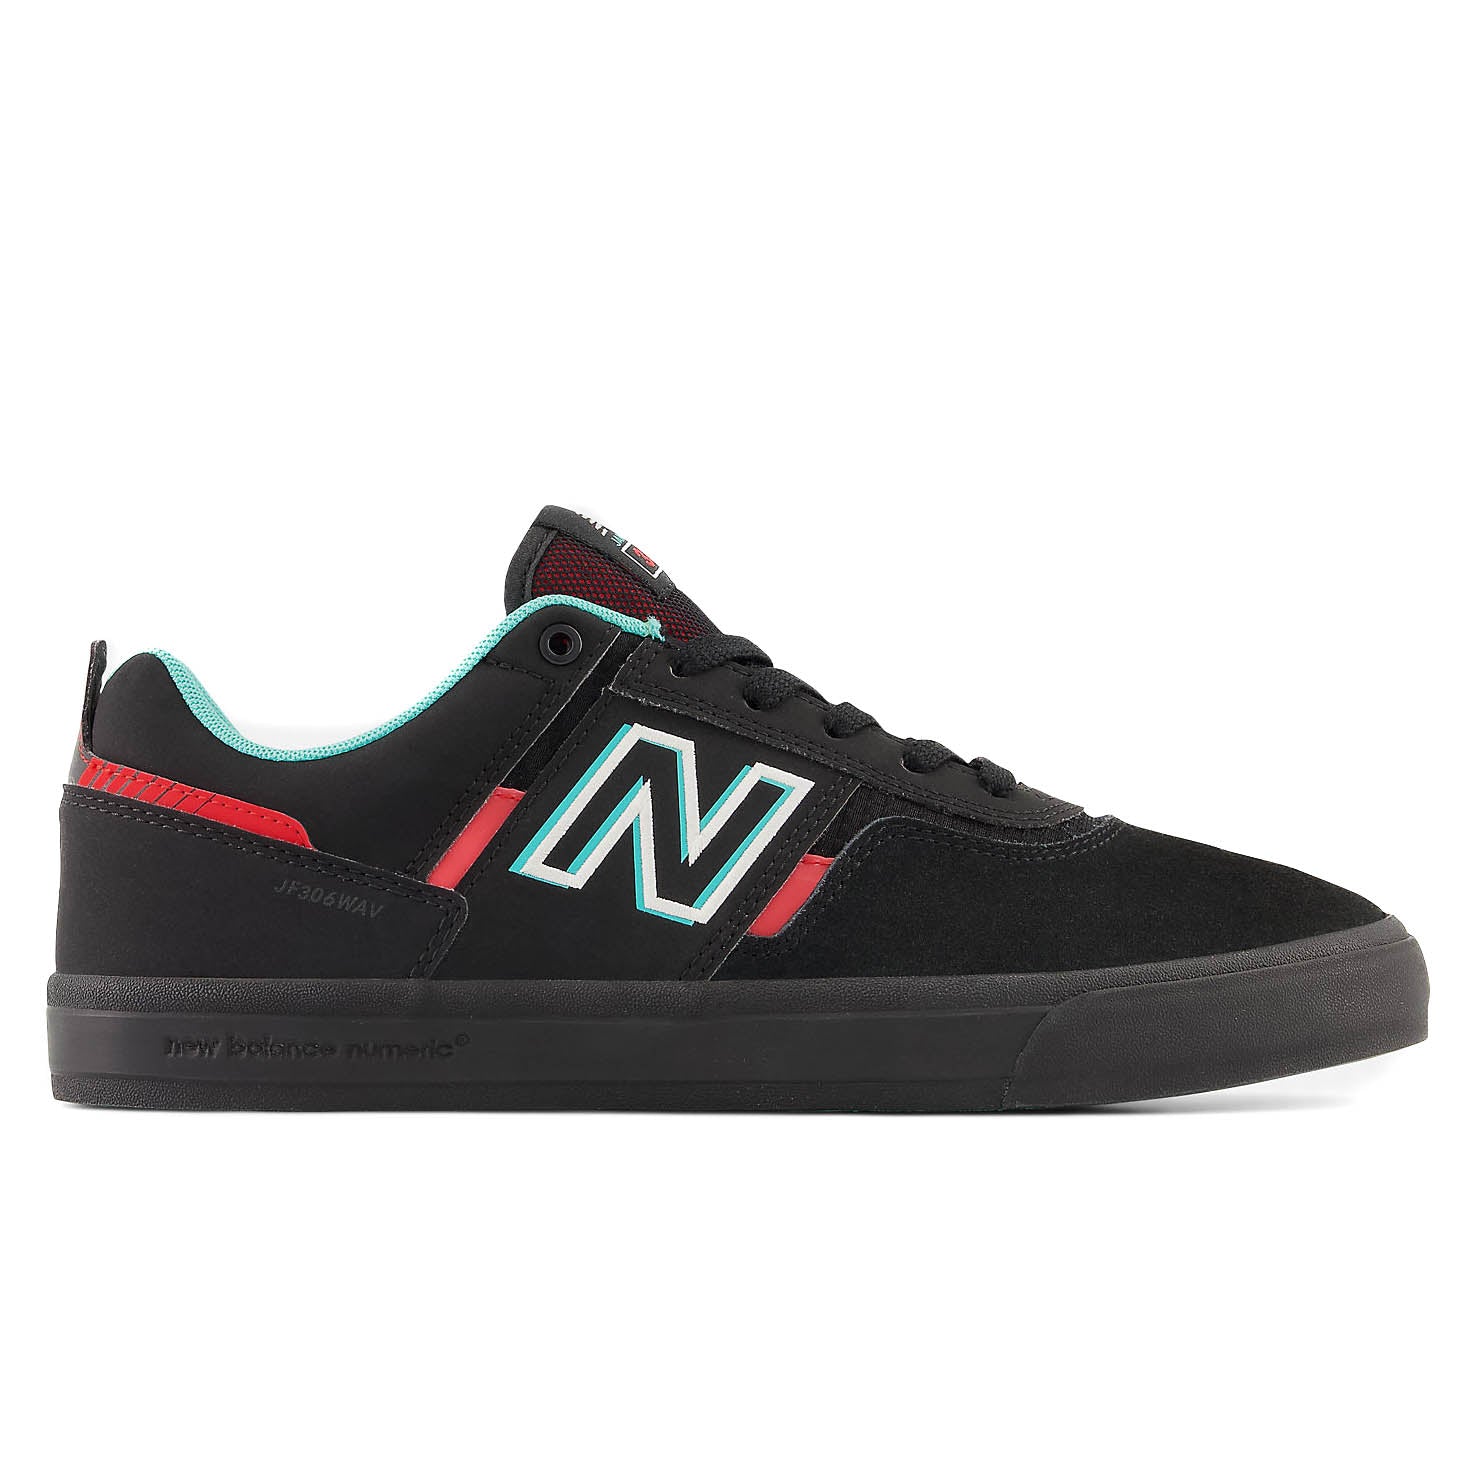 NB Numeric NM306 - Black